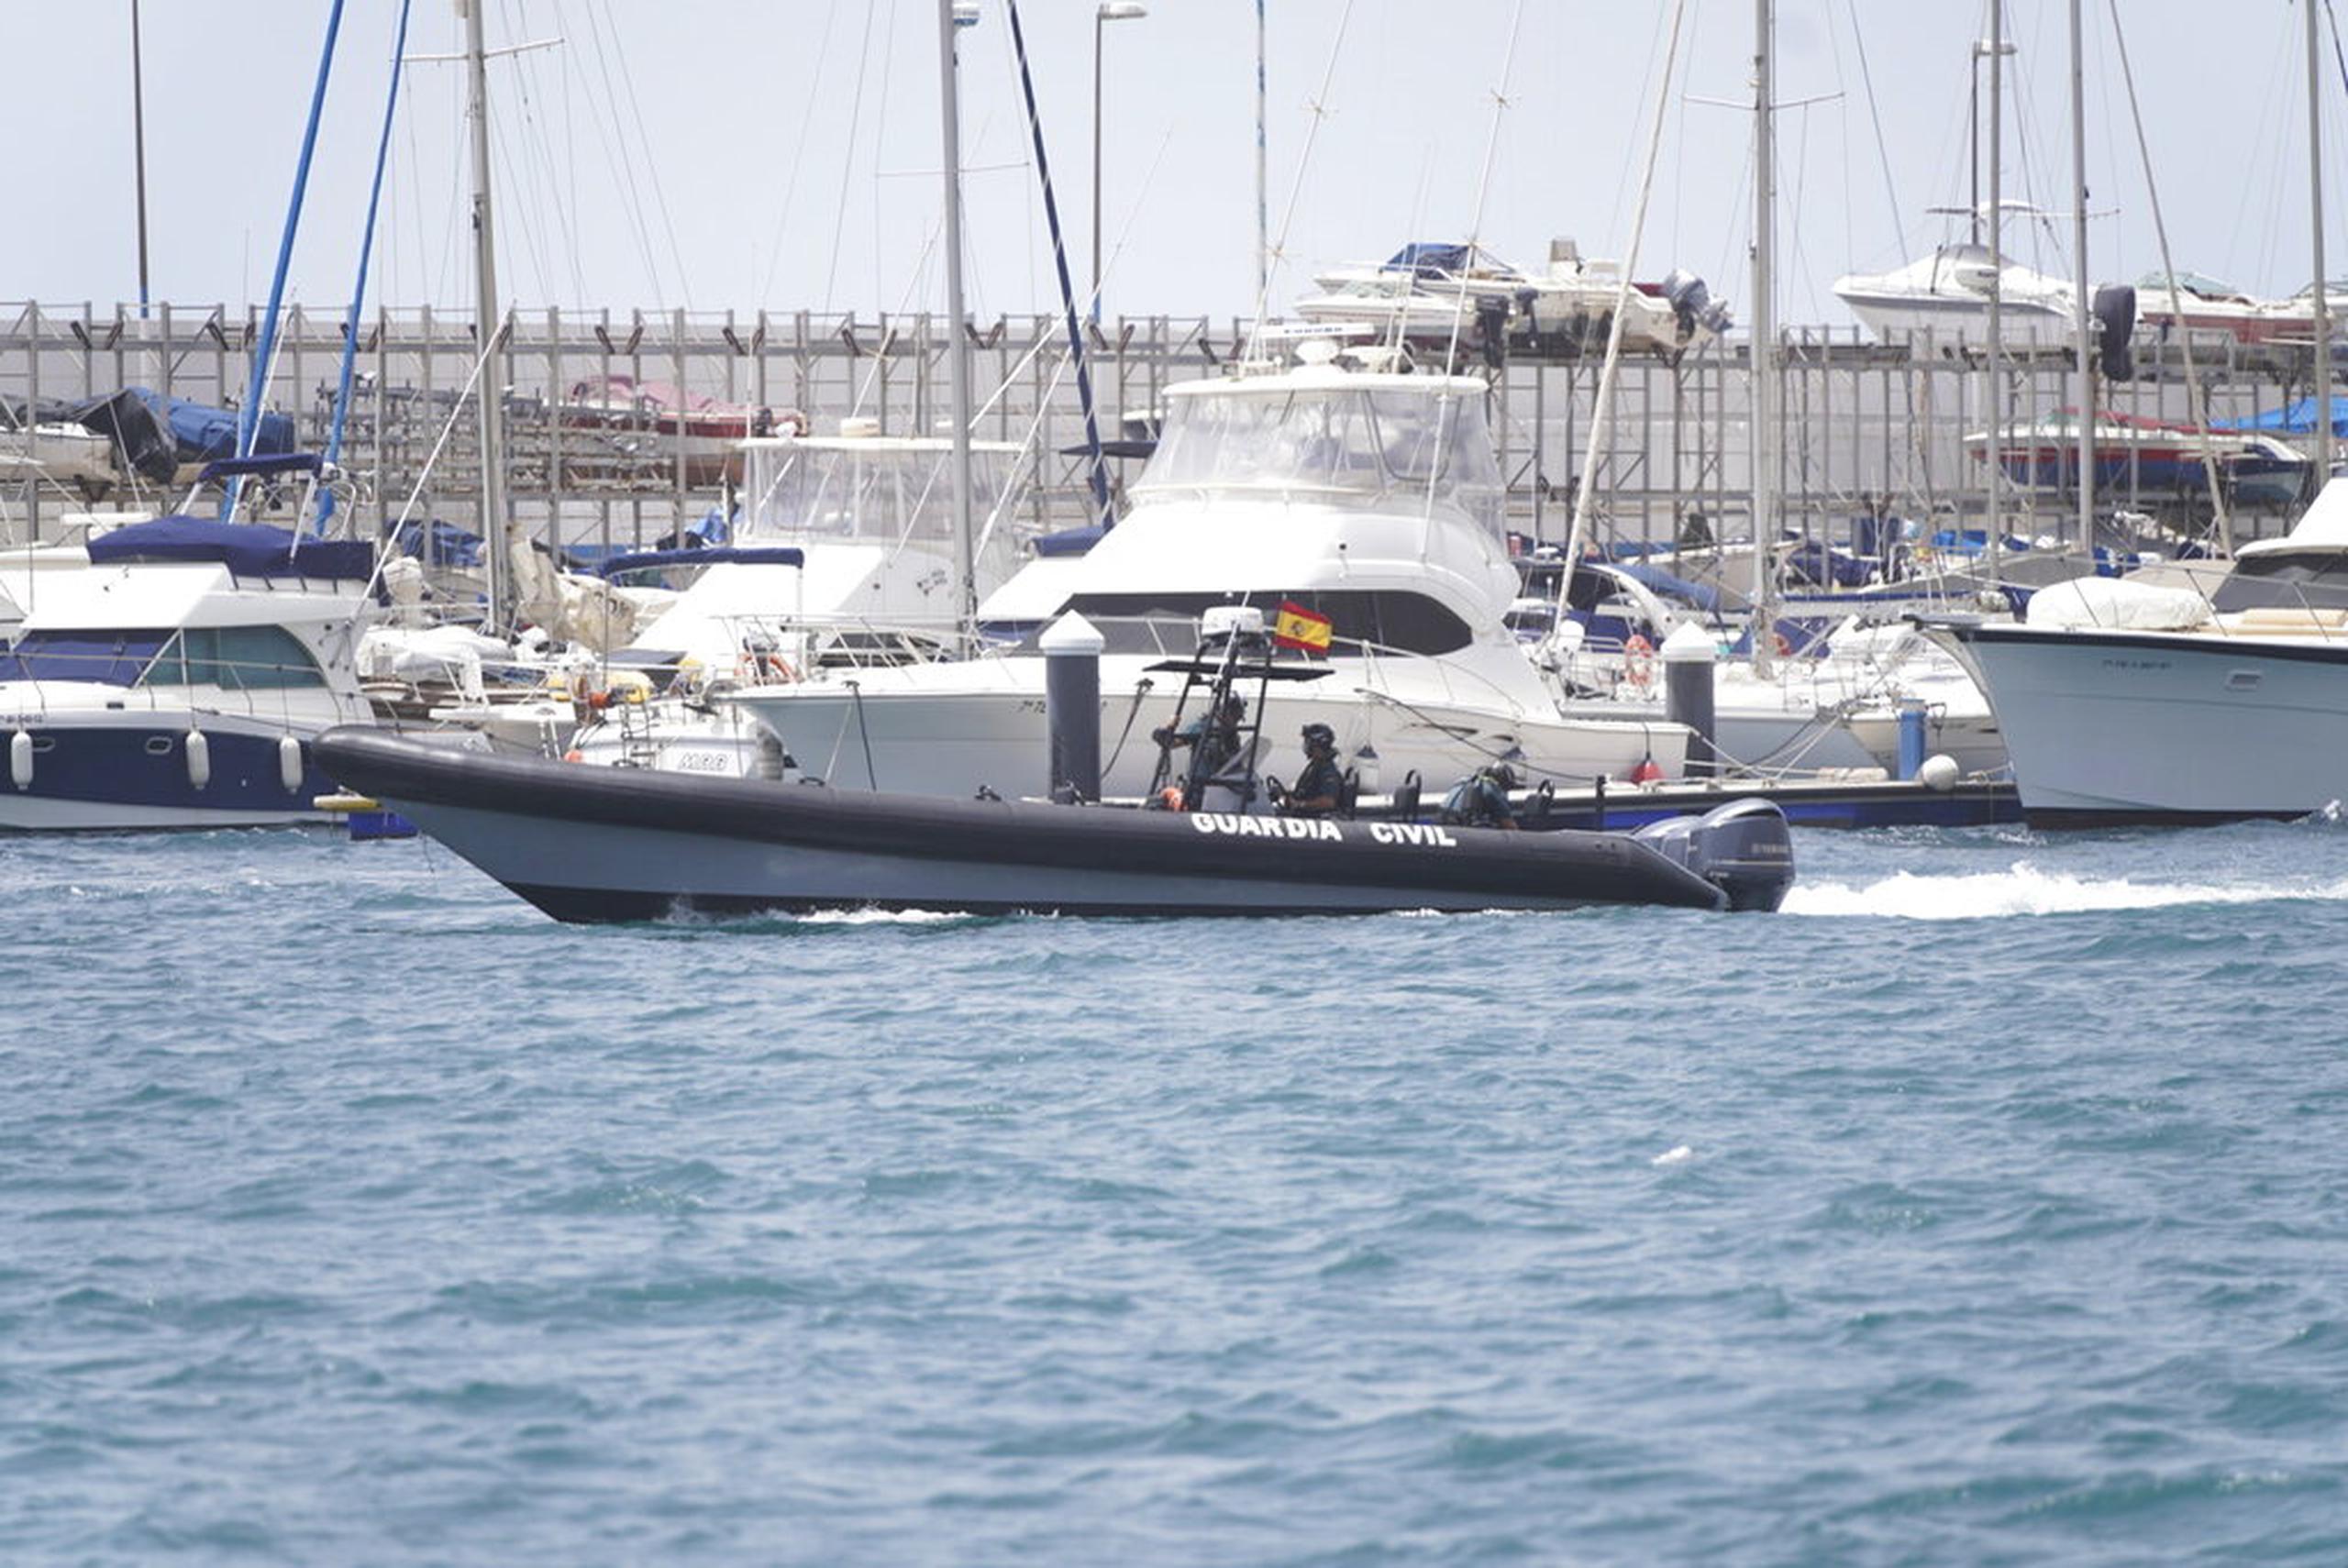 Agentes de la Guardia Civil trabajan en el puerto de Santa Cruz de Tenerife, España, el 11 de junio de 2021.